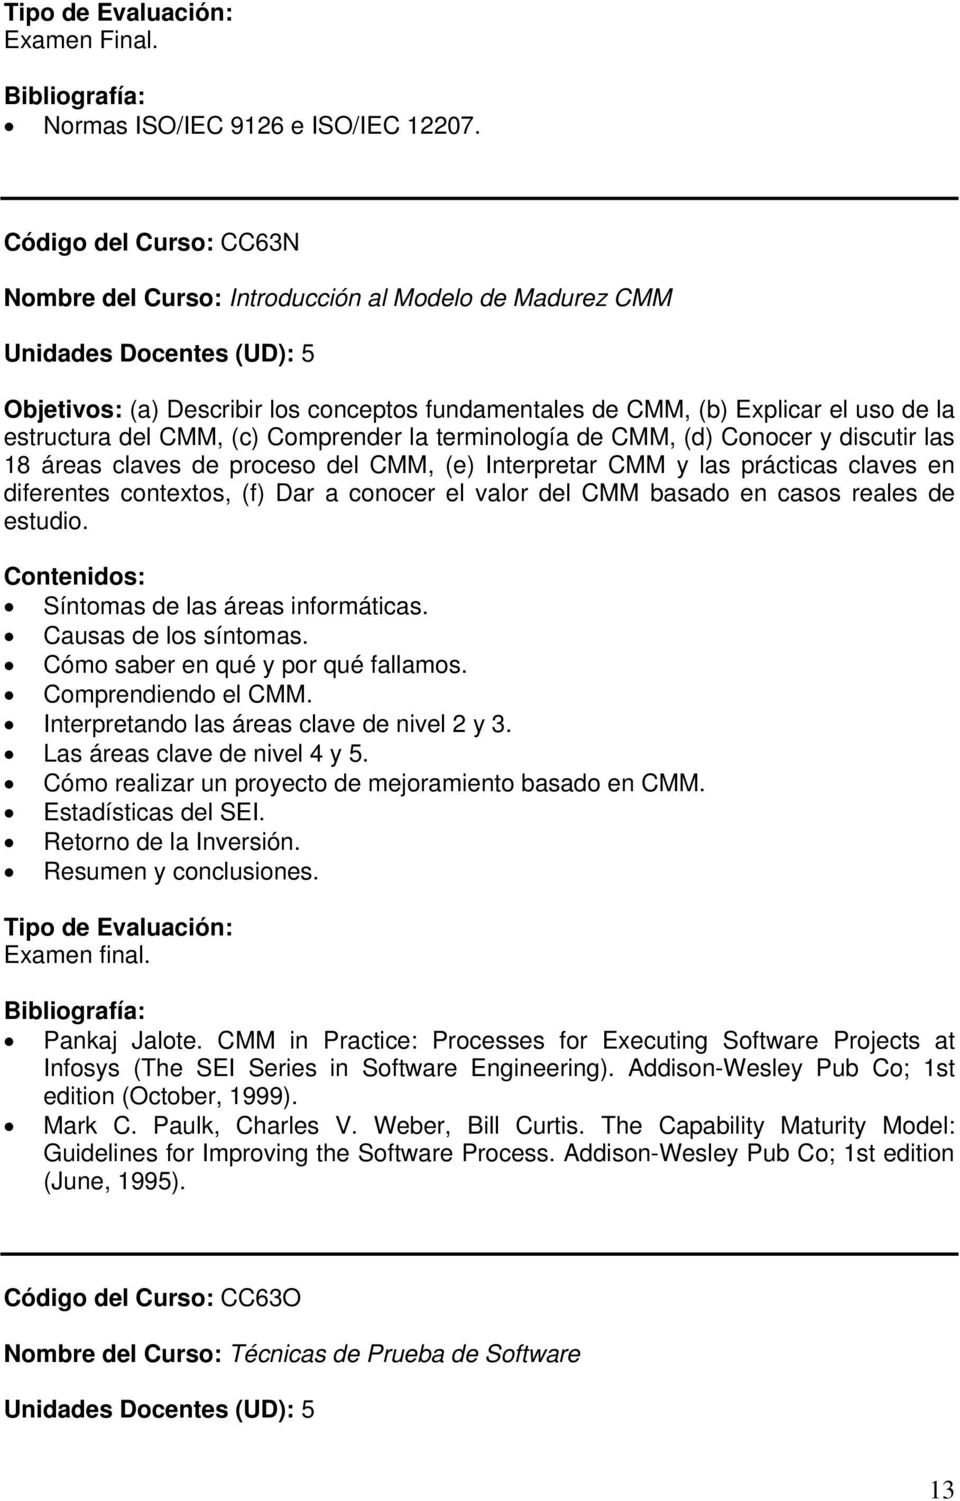 Comprender la terminología de CMM, (d) Conocer y discutir las 18 áreas claves de proceso del CMM, (e) Interpretar CMM y las prácticas claves en diferentes contextos, (f) Dar a conocer el valor del